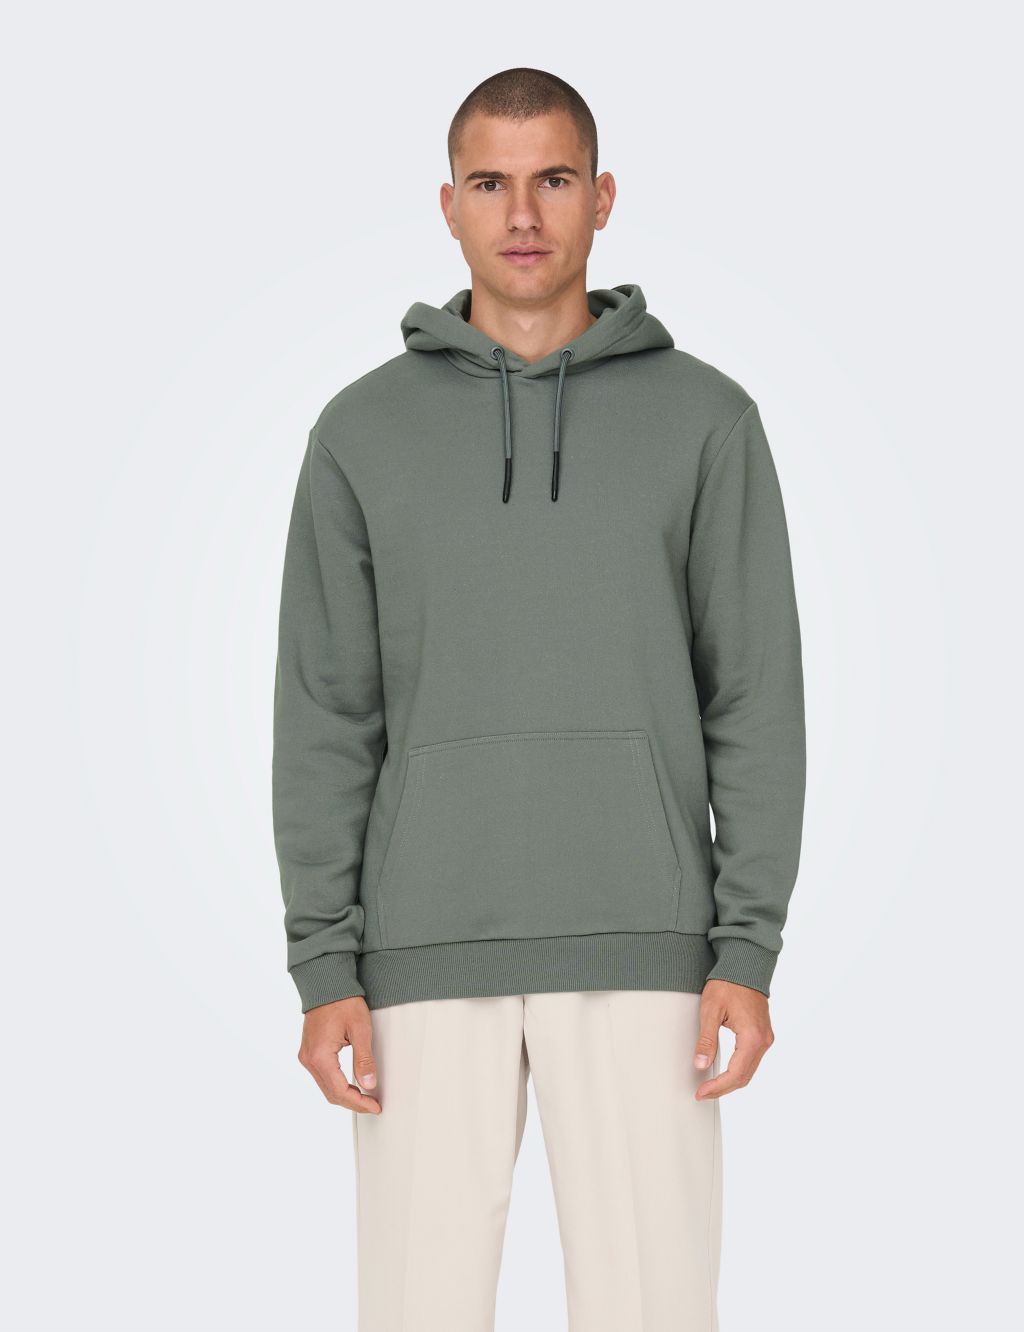 Men’s Grey Hoodies & Sweatshirts | M&S